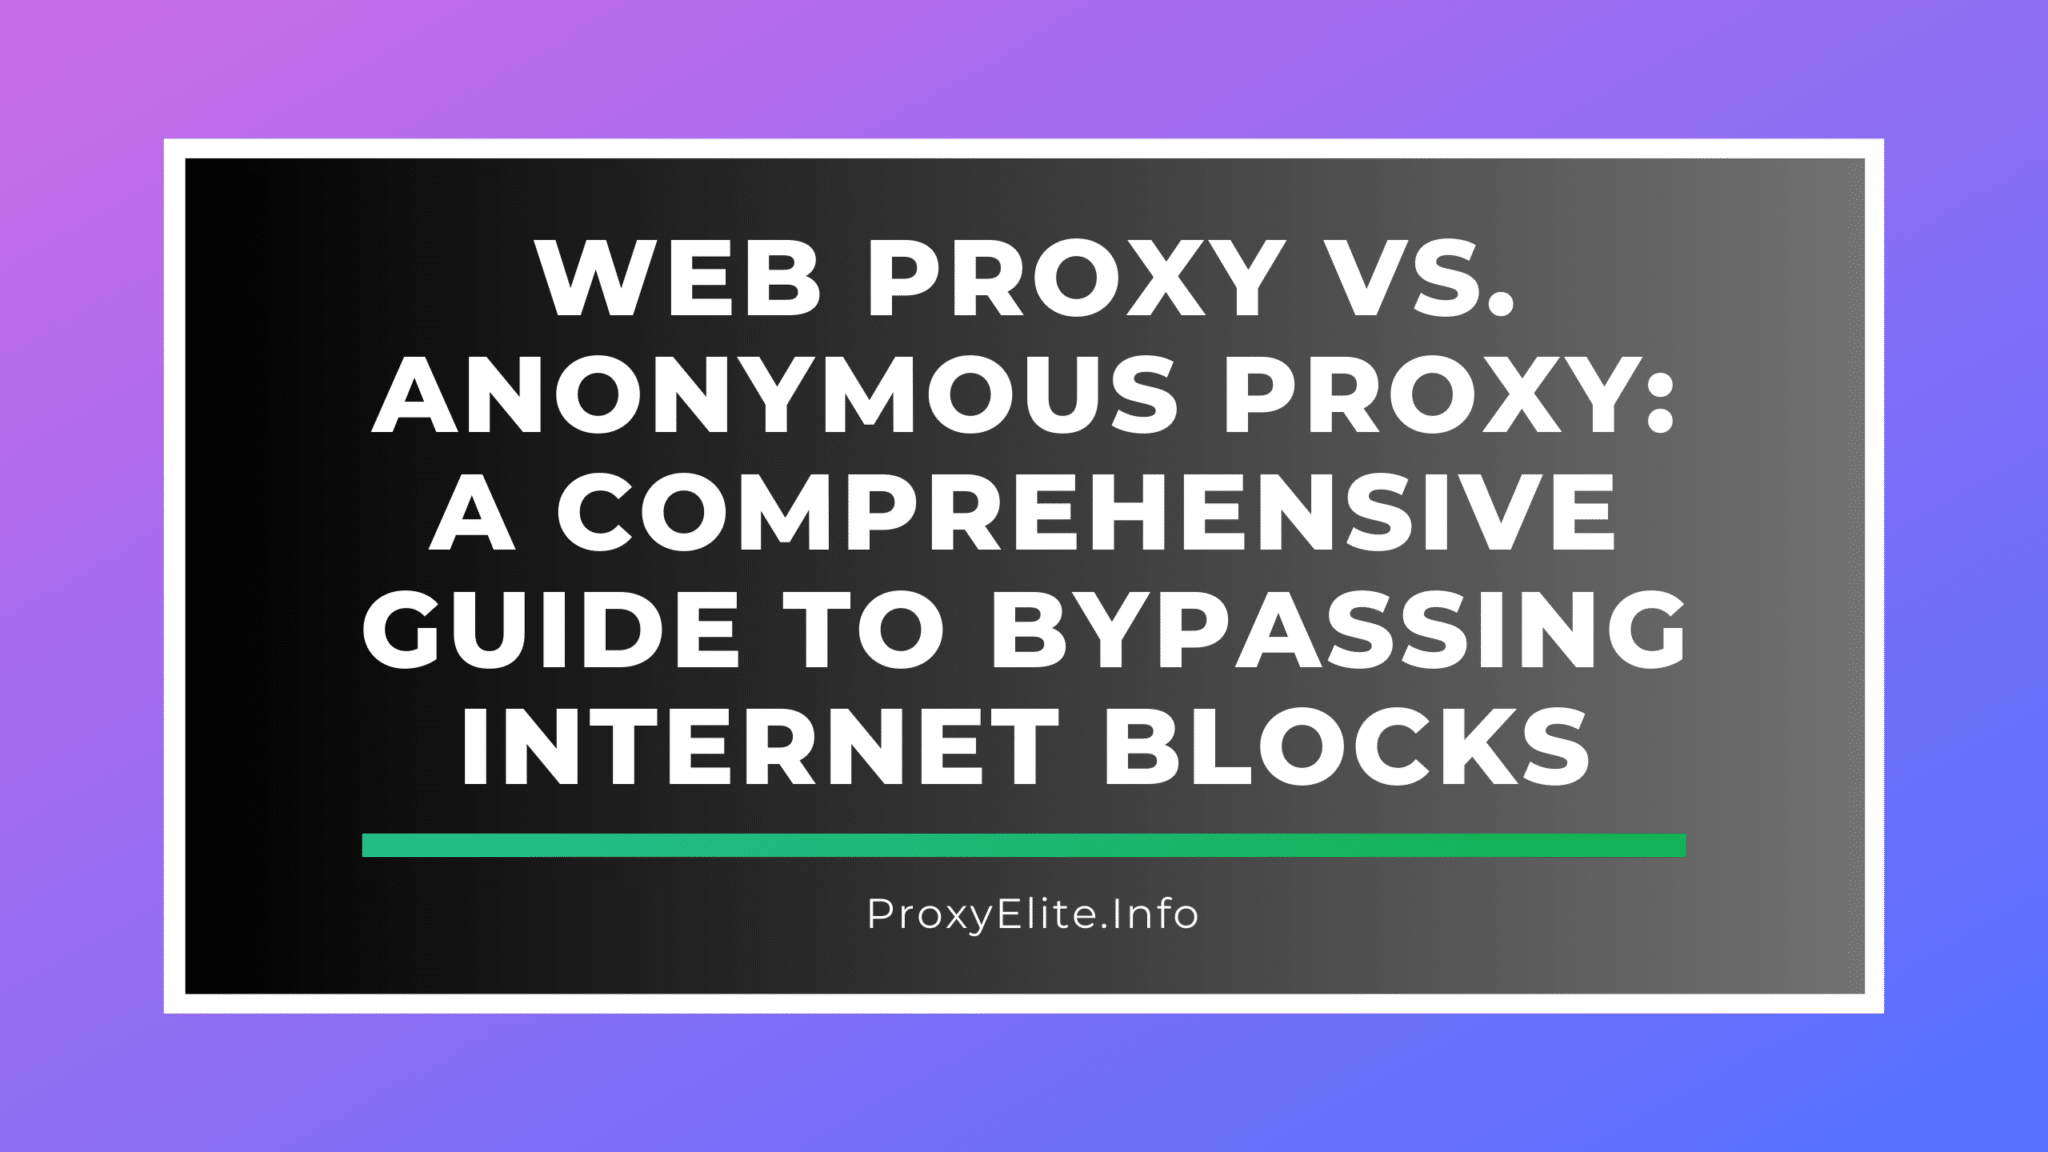 Веб-прокси против анонимного прокси: подробное руководство по обходу интернет-блокировок